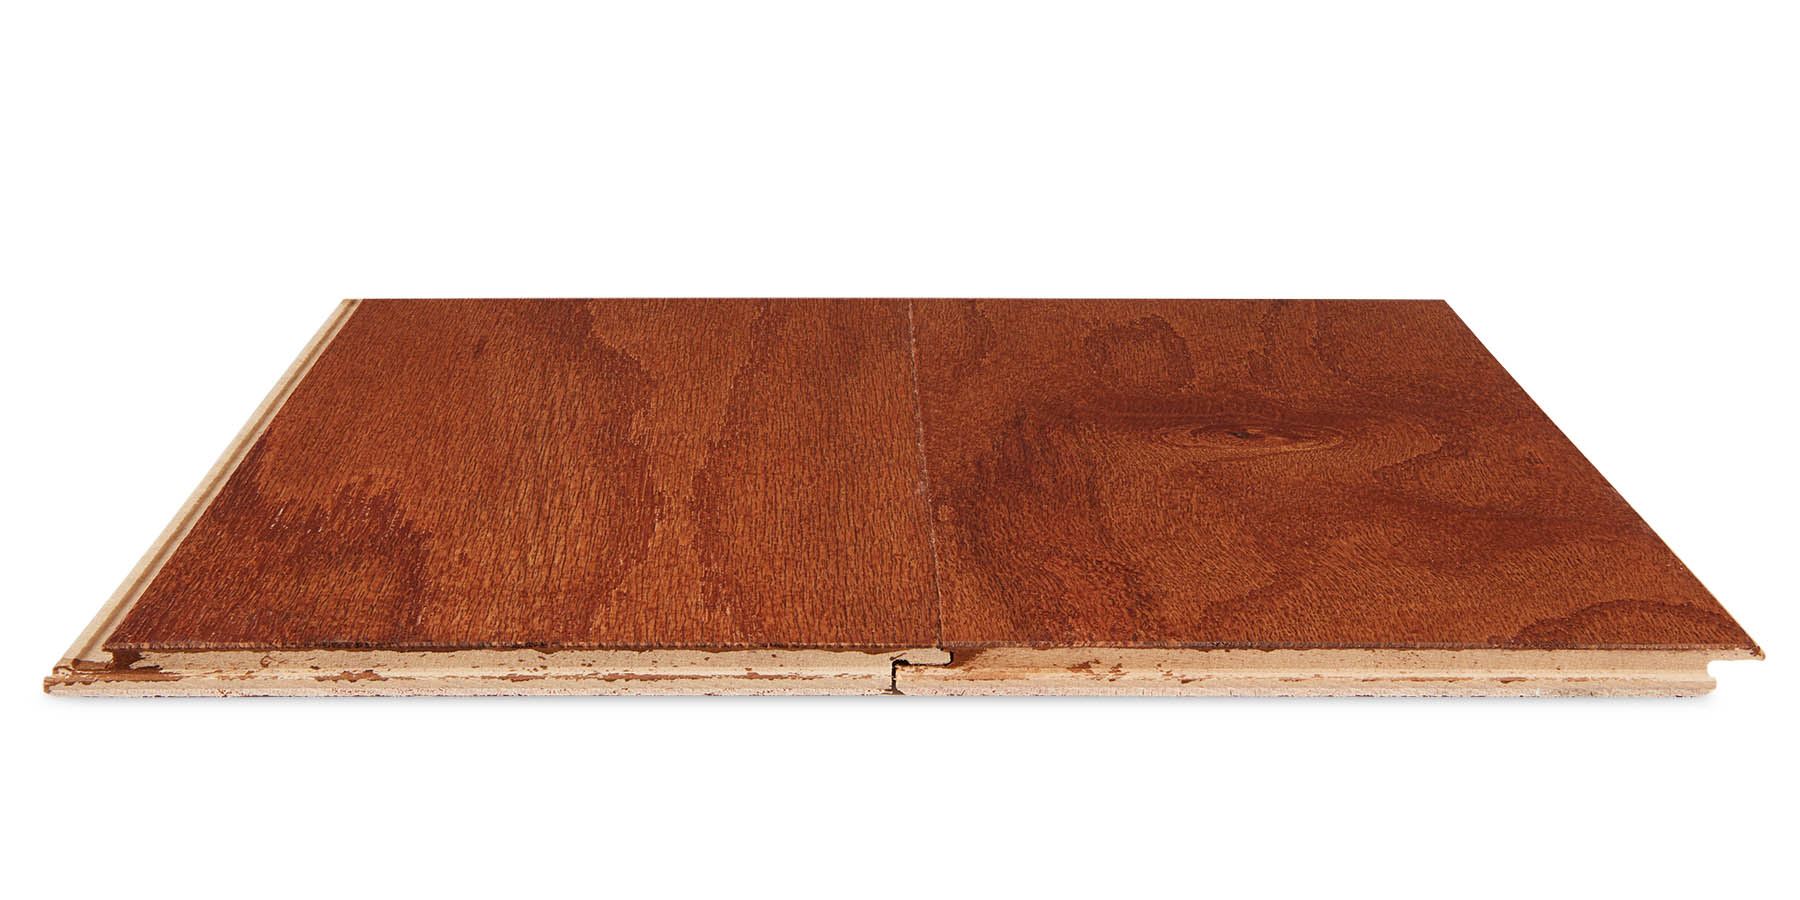 Woodbridge Engineered Hardwood Flooring